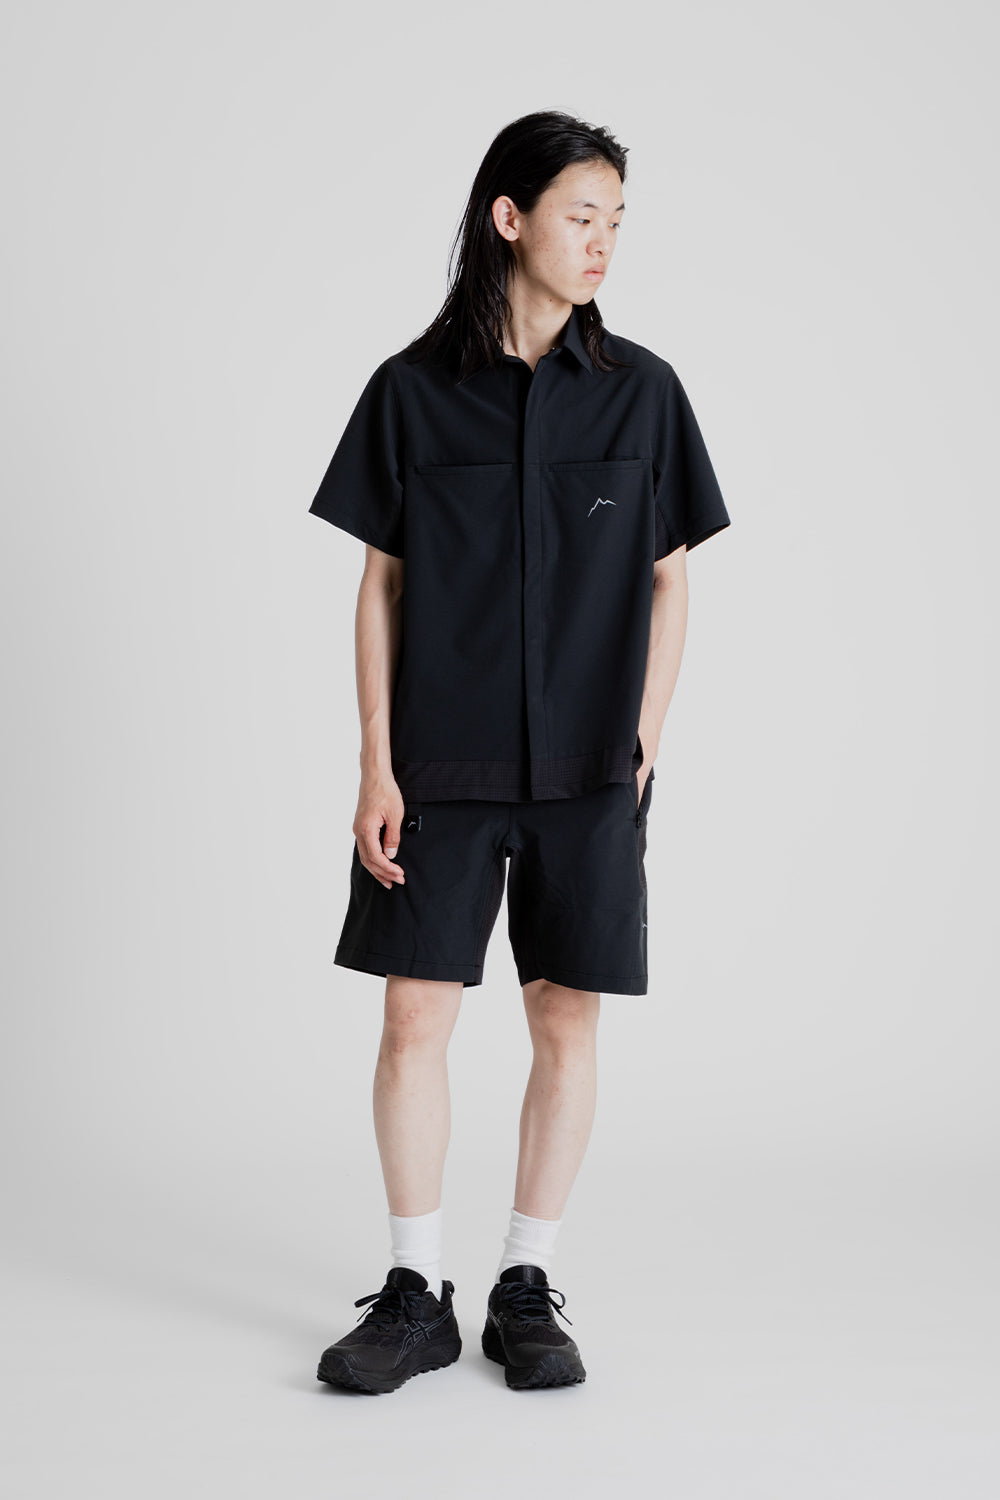 Cayl EQ Hybrid Short Sleeve Shirt in Black